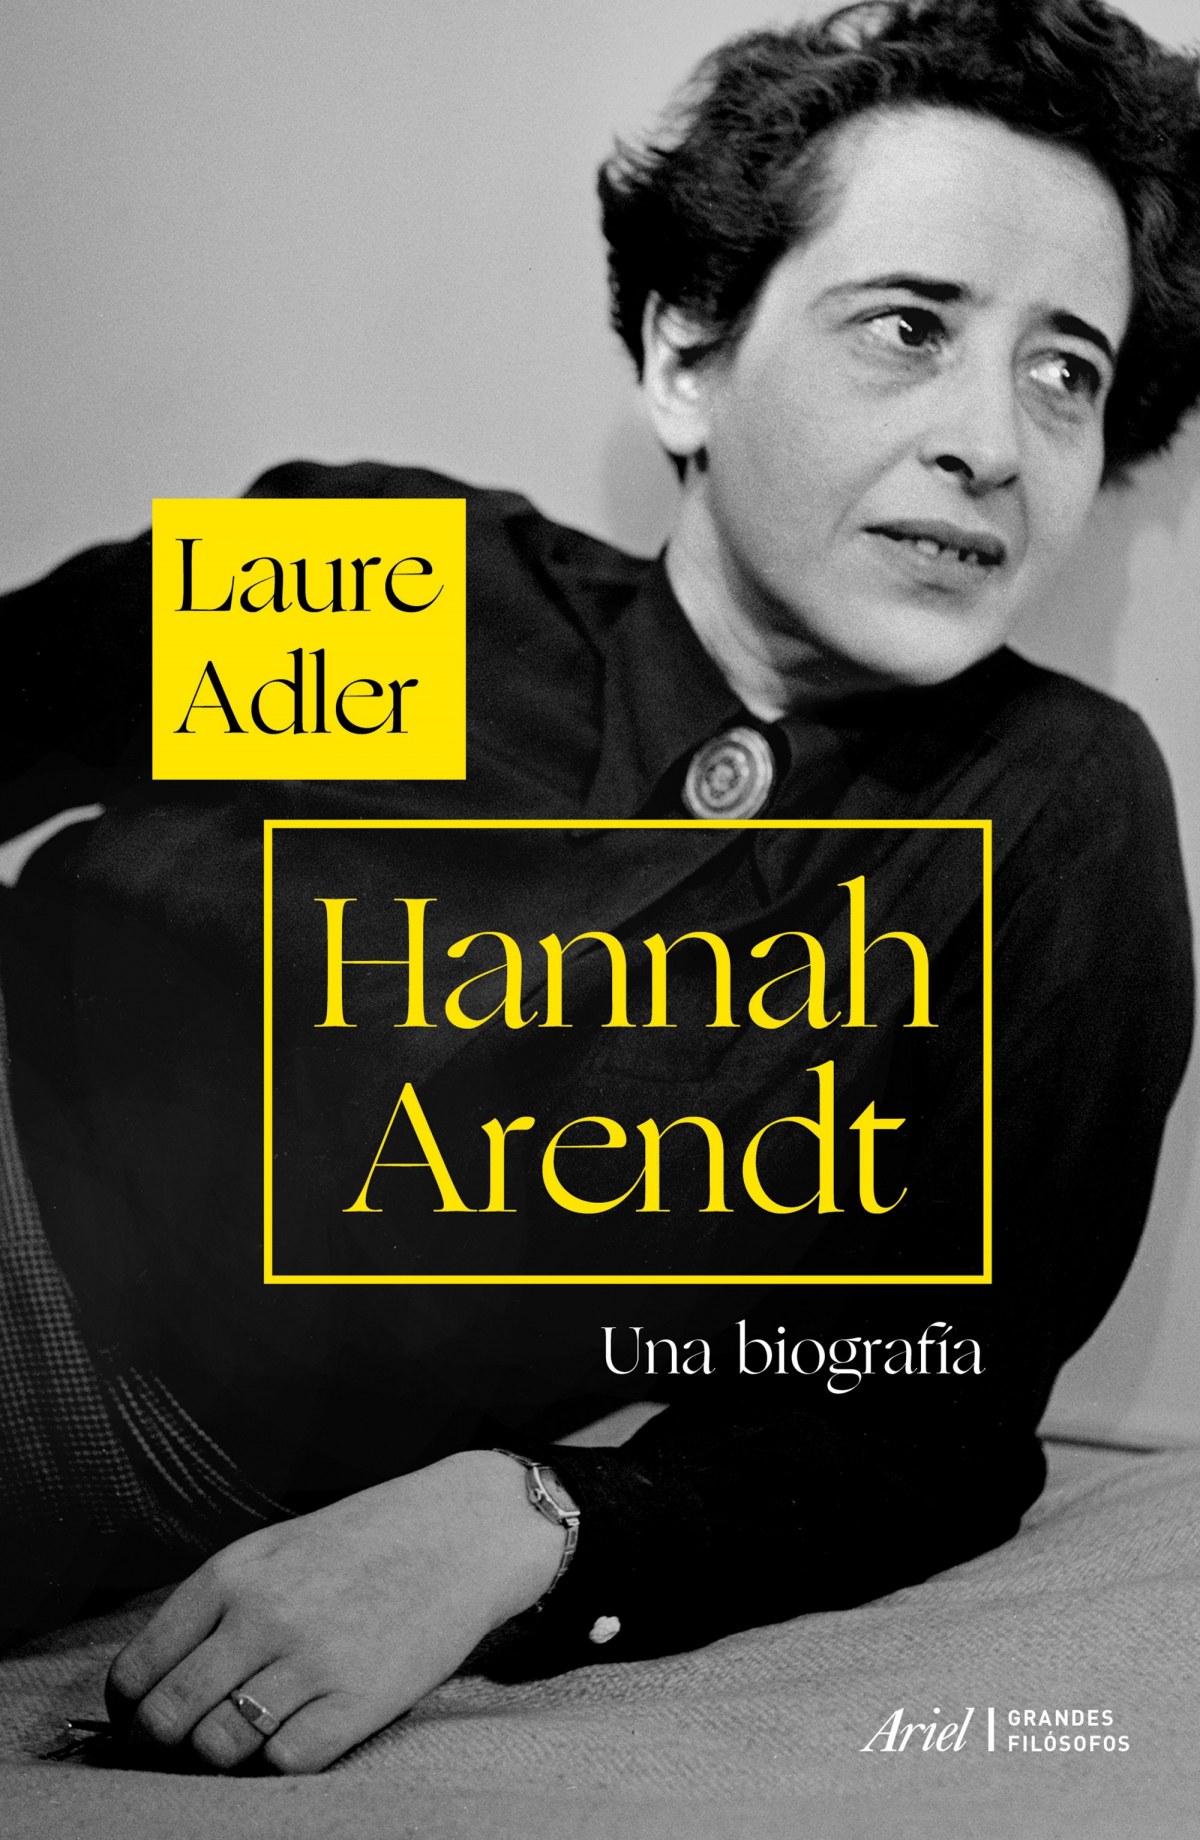 HANNAH ARENDT Una biografía - Adler, Laure